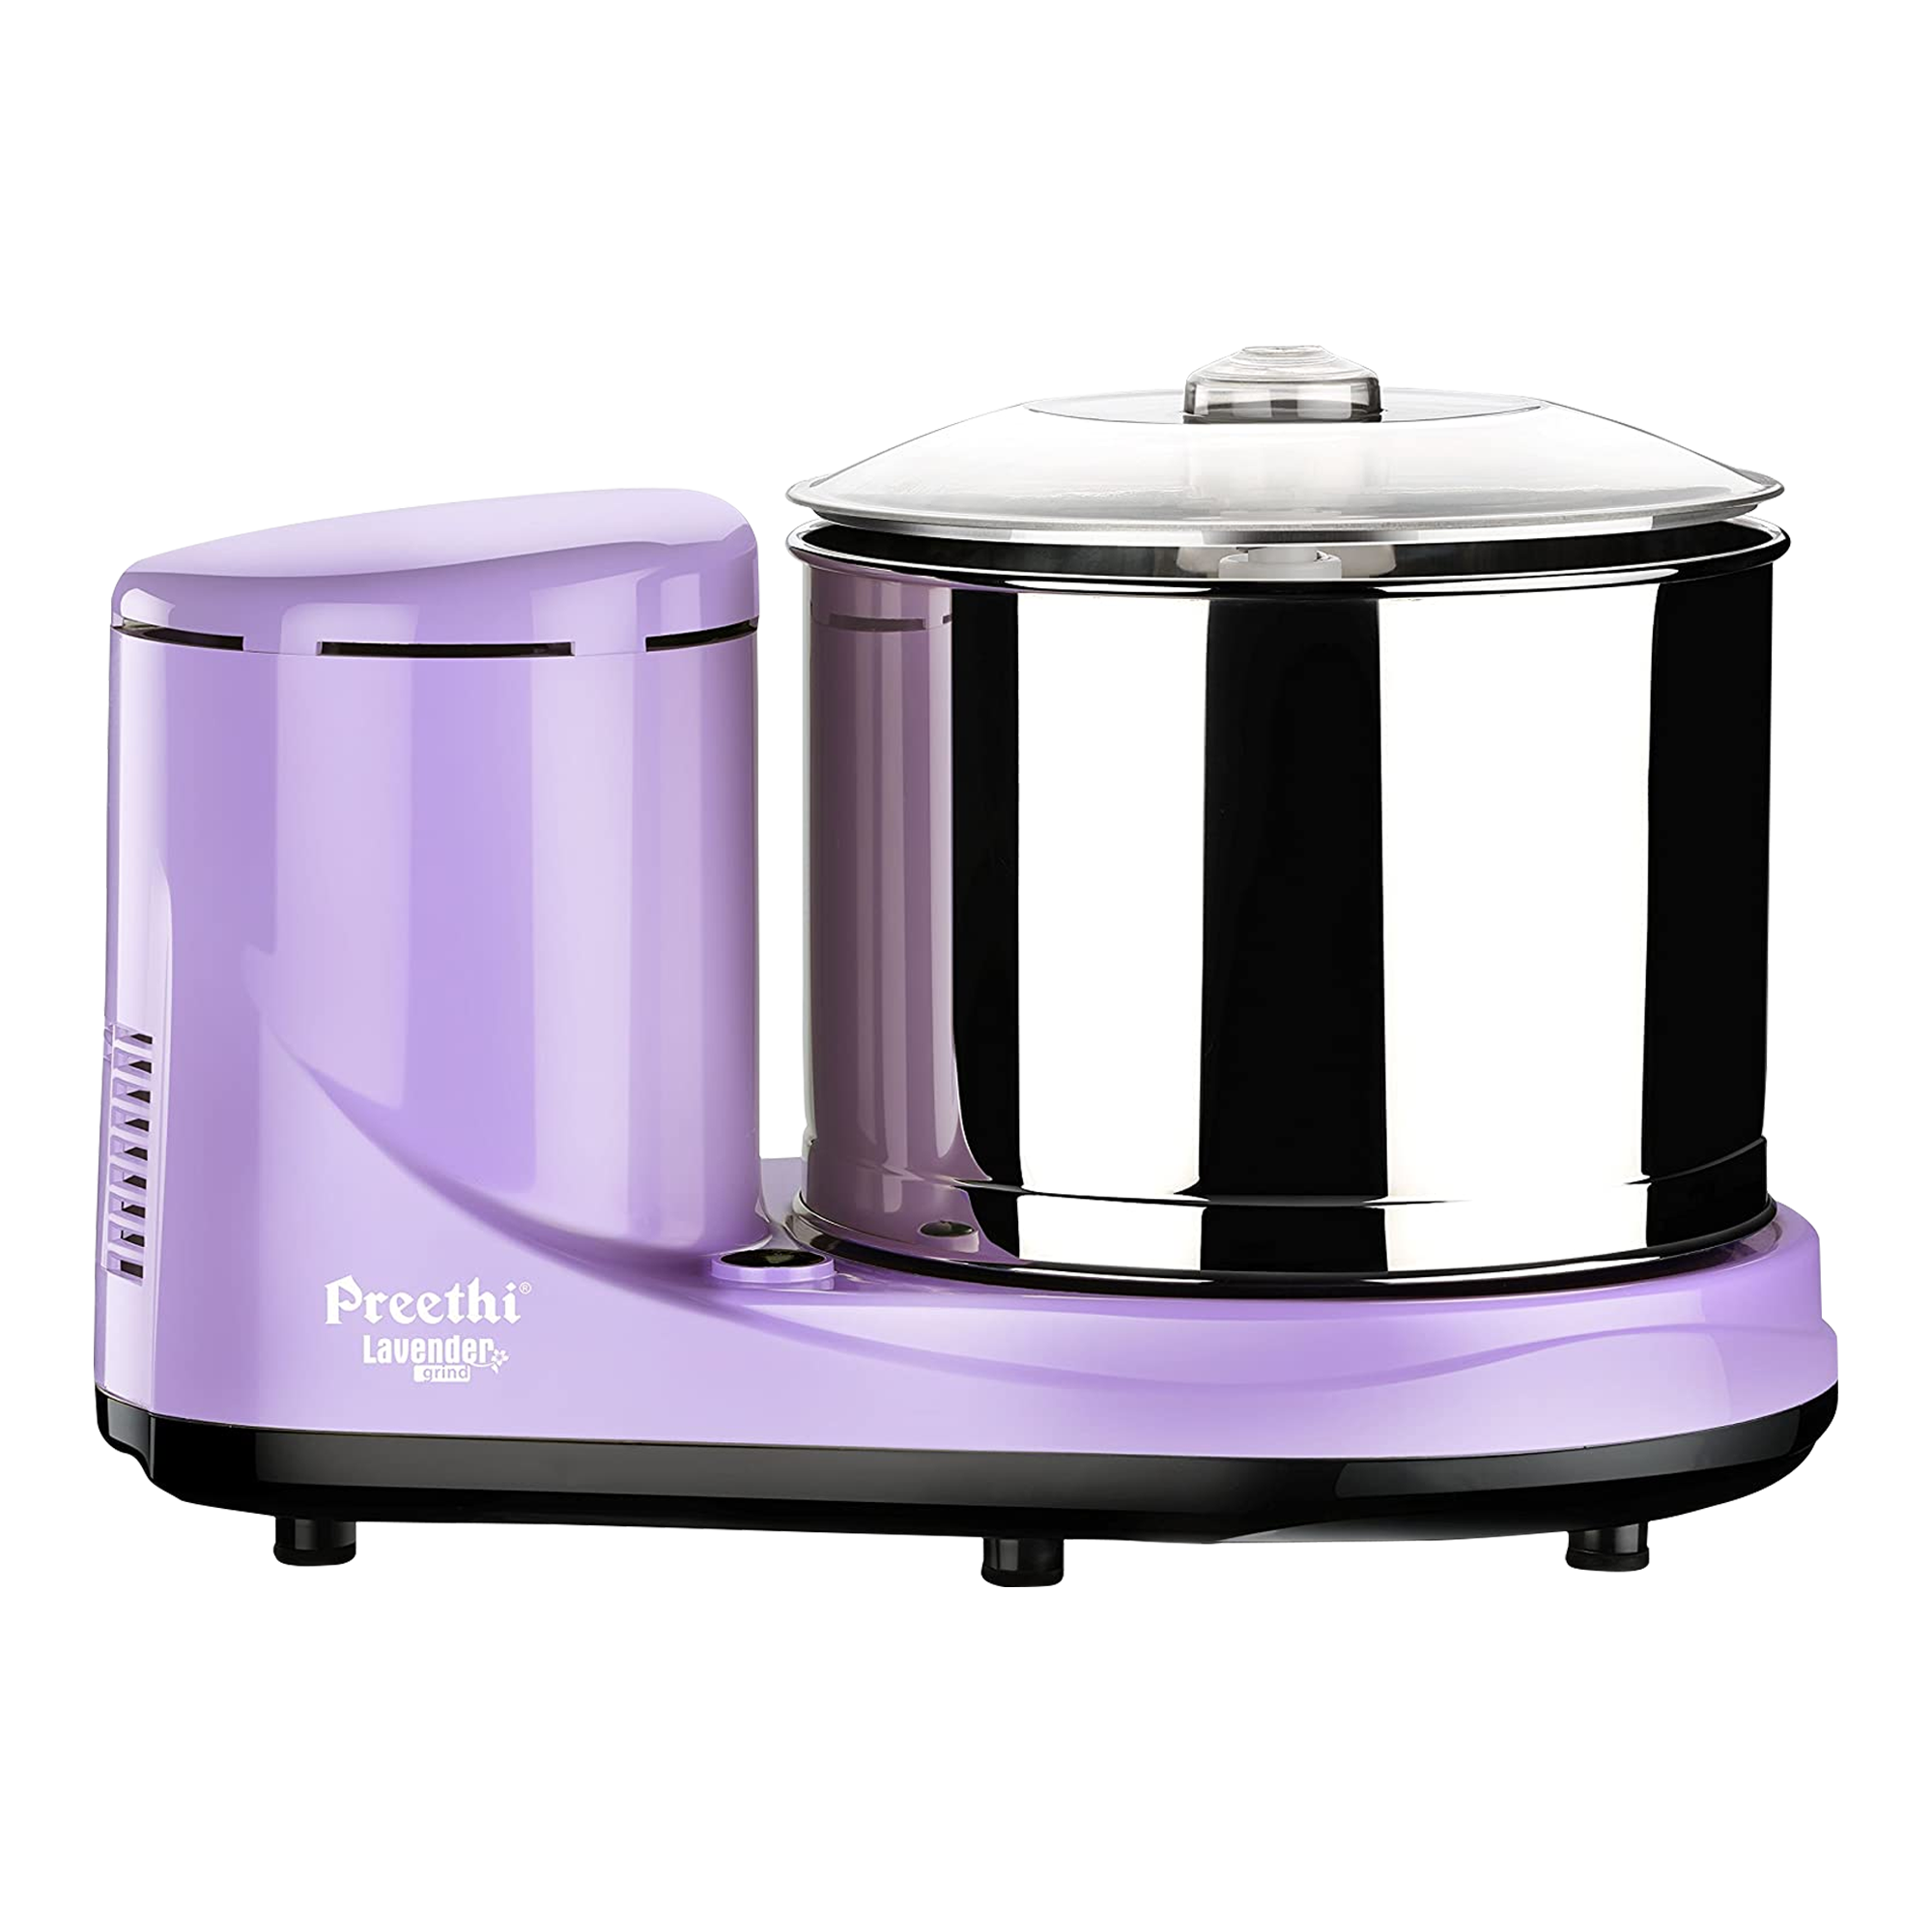 https://img-prd-pim.poorvika.com/product/preethi-lavender-wg-905-2-0-litre-wet-grinder-violet.png